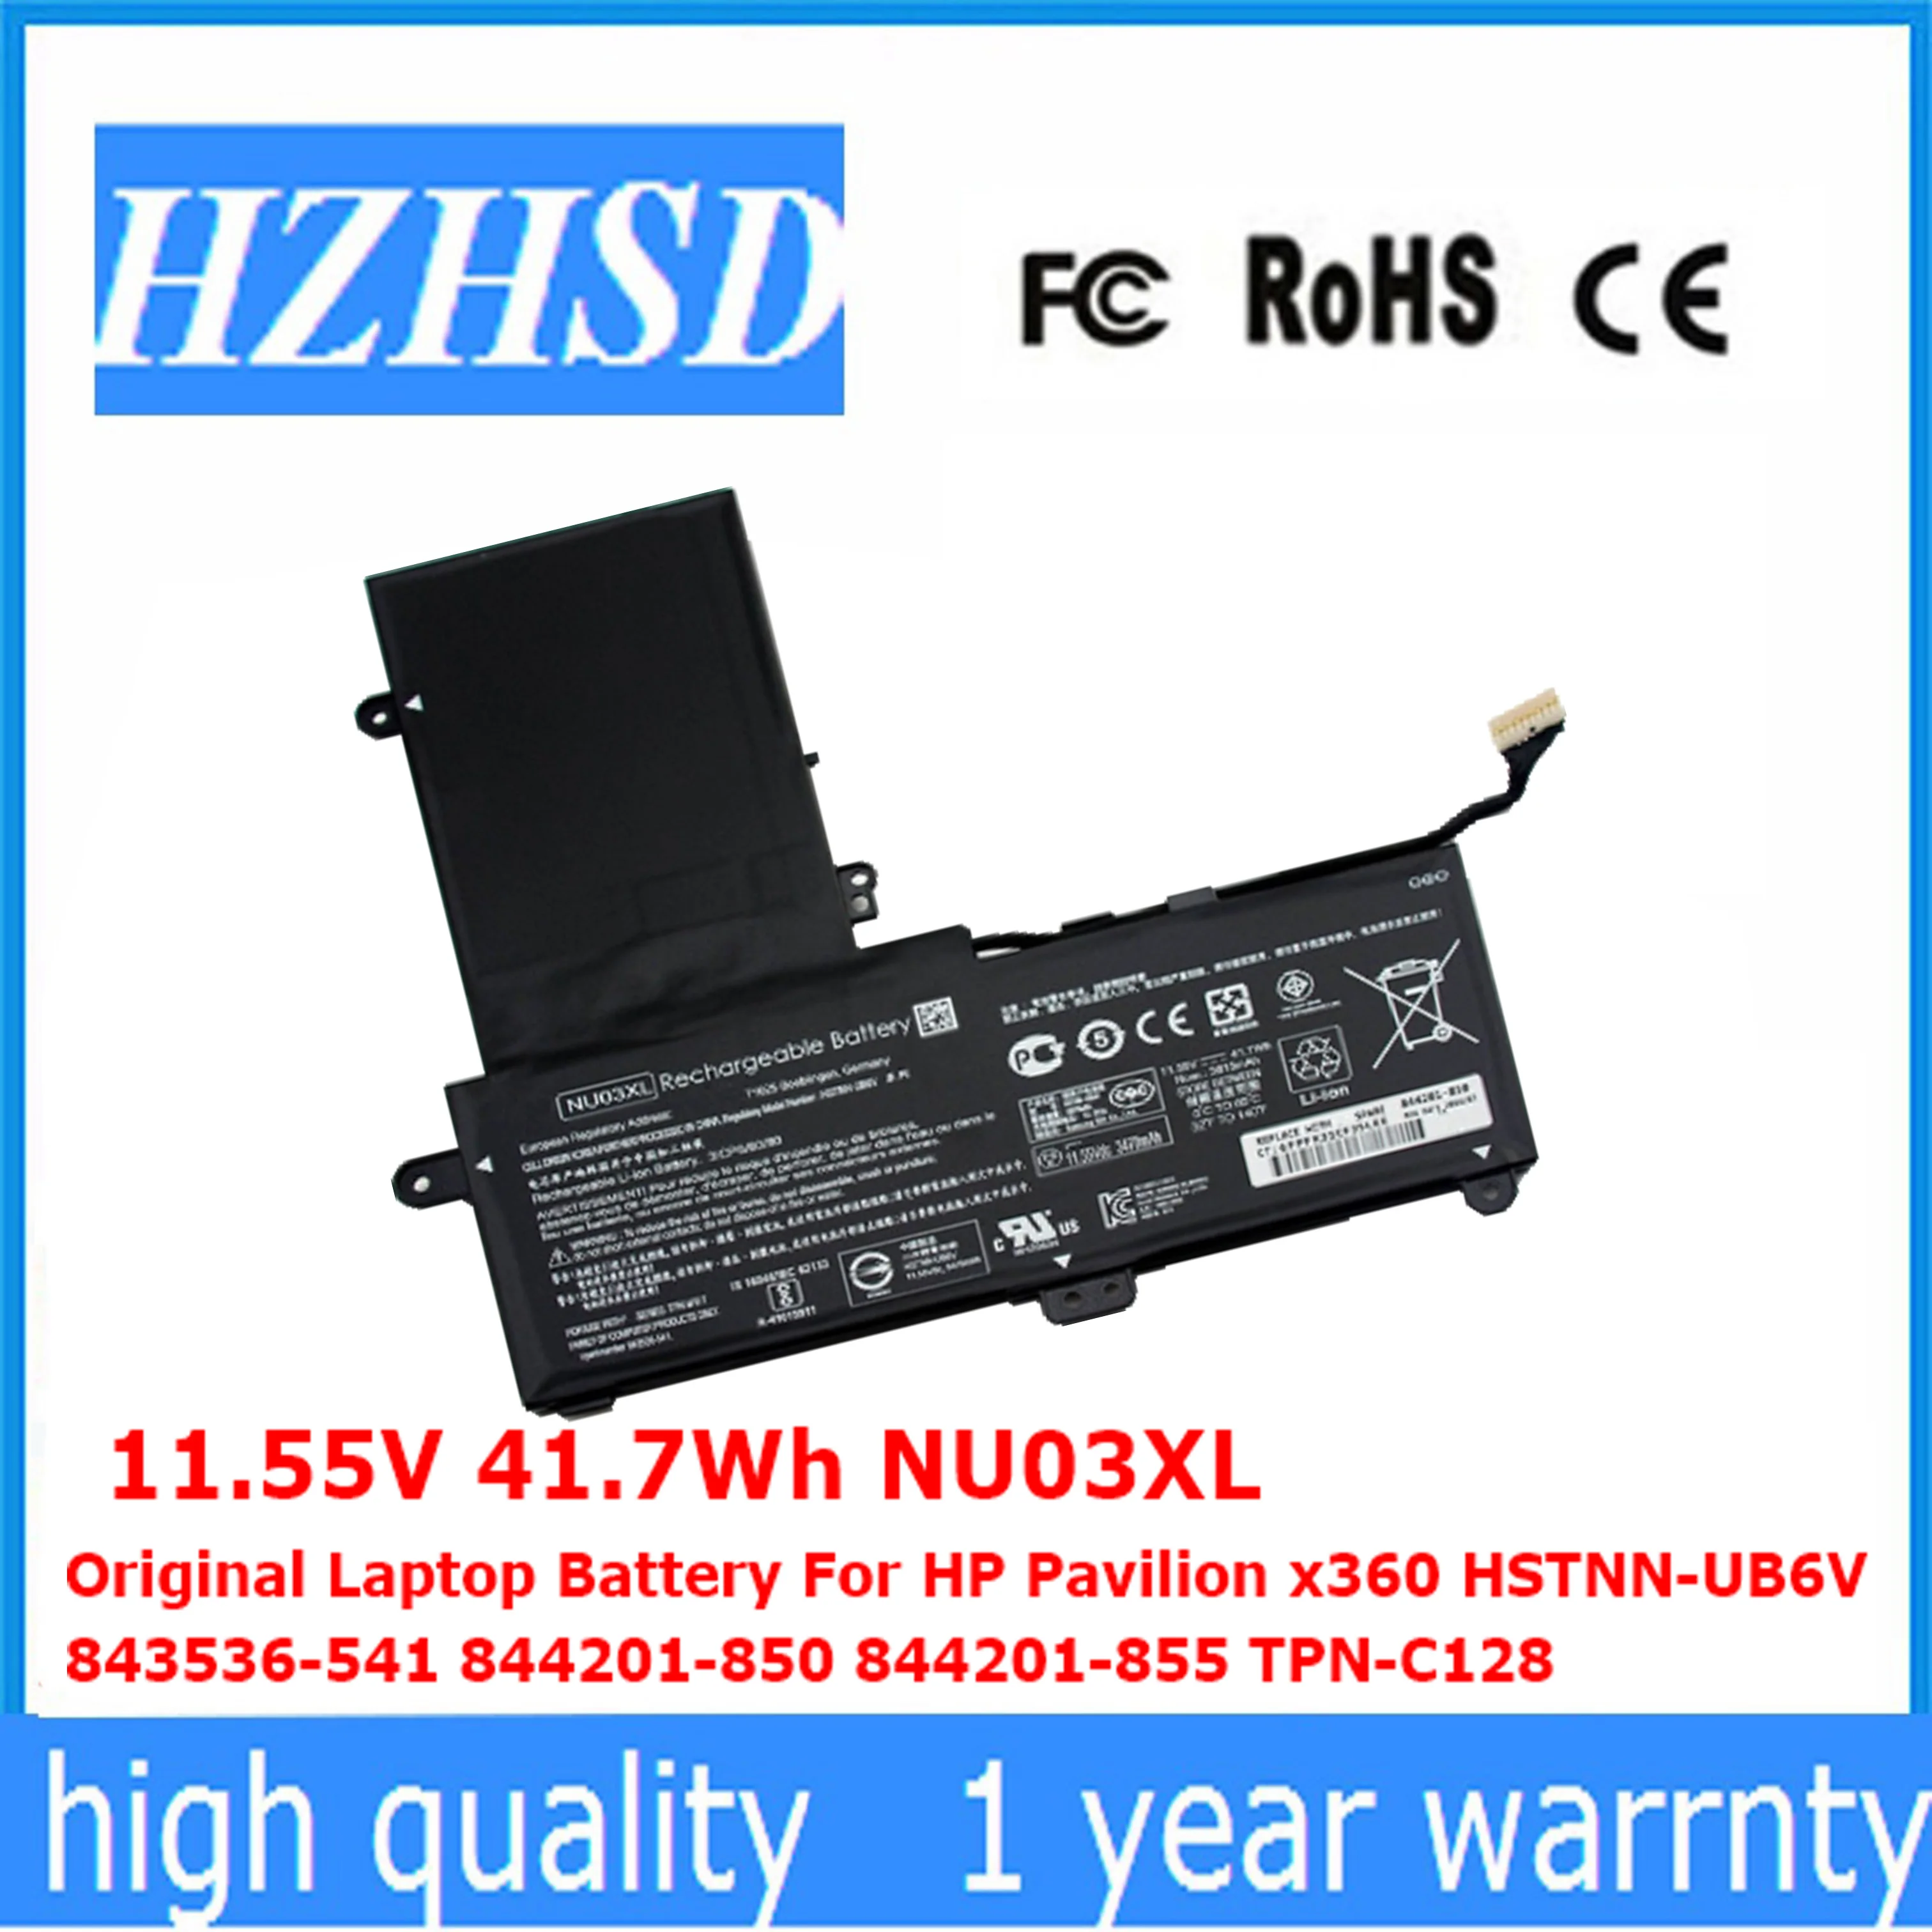 

11.55V 41.7Wh NU03XL Original Laptop Battery For HP Pavilion x360 HSTNN-UB6V 843536-541 844201-850 844201-855 TPN-C128